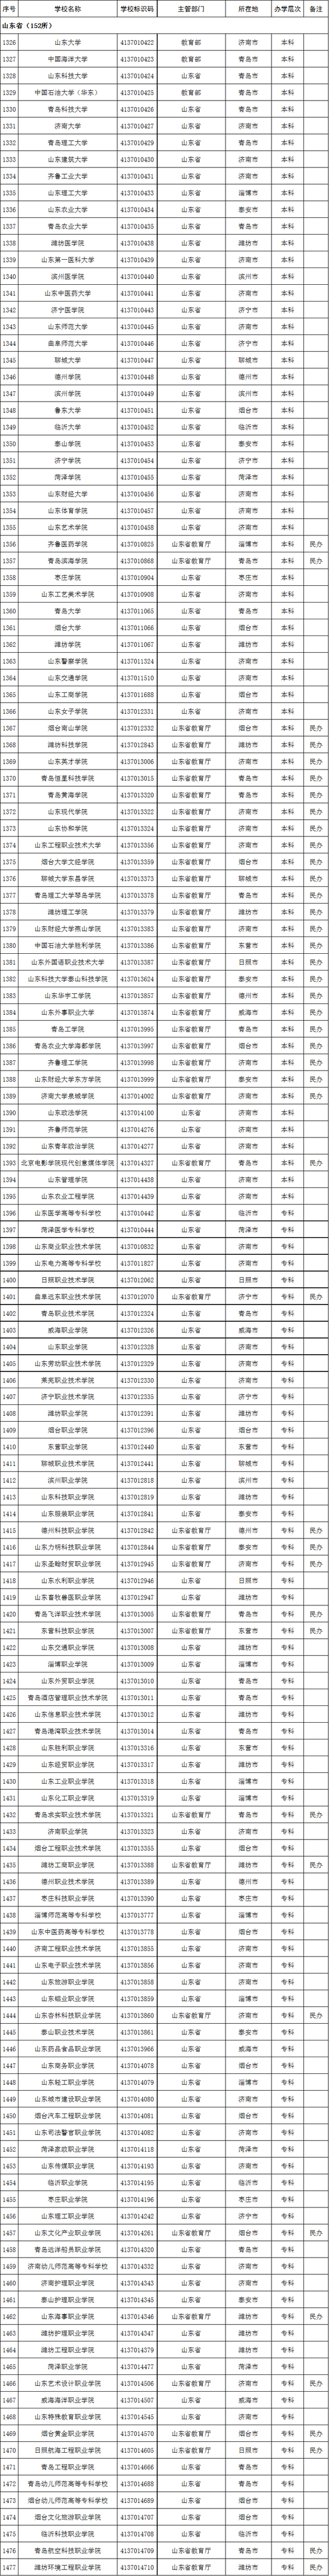 山东省2020年高校名单(152所)